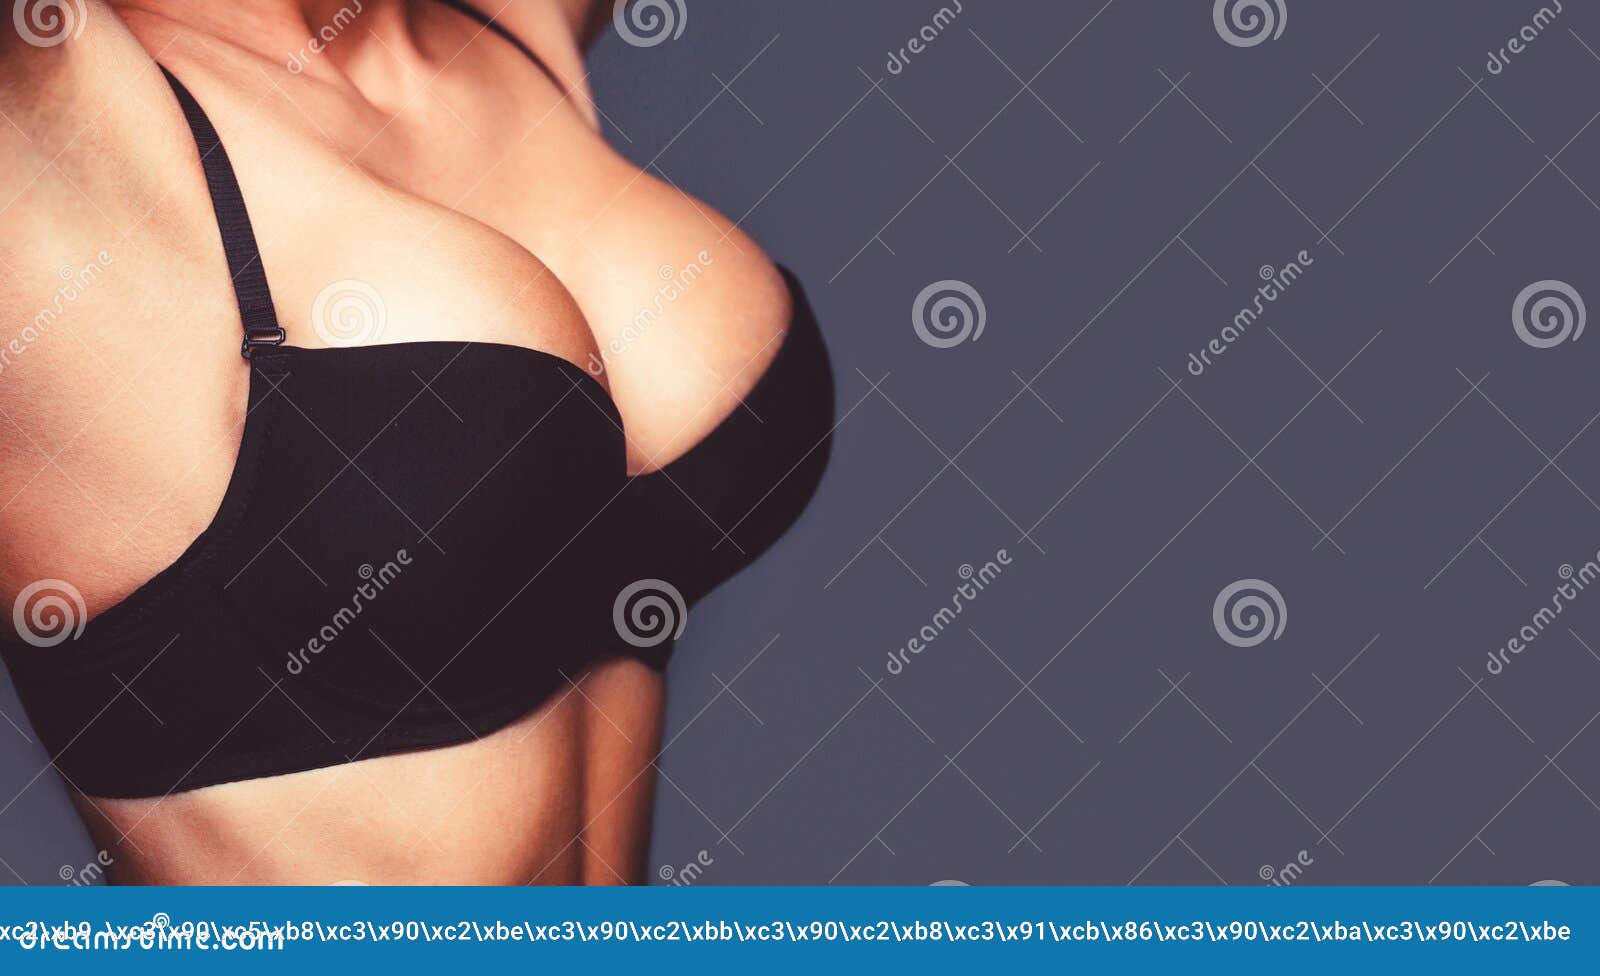 dambar malla add girls boobs close up photo